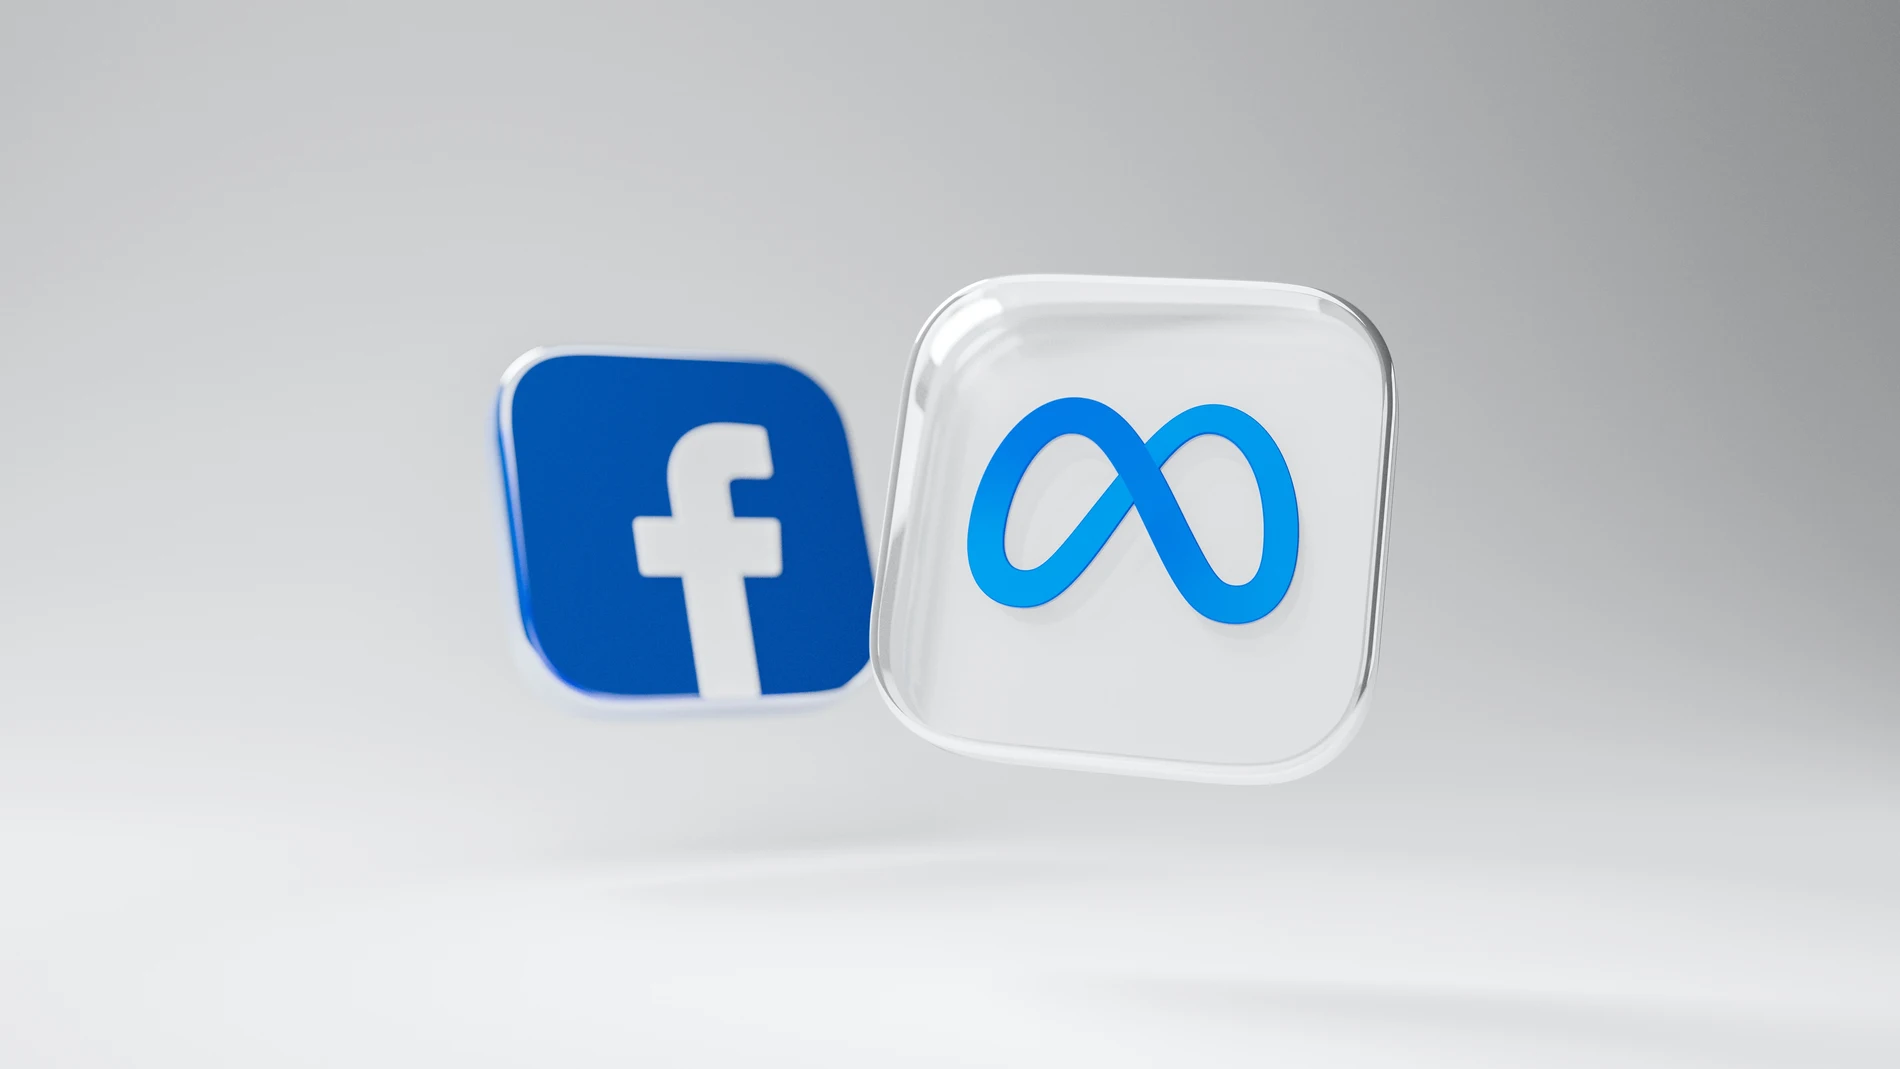 Iconos de la red social Facebook y Meta, compañía matriz.